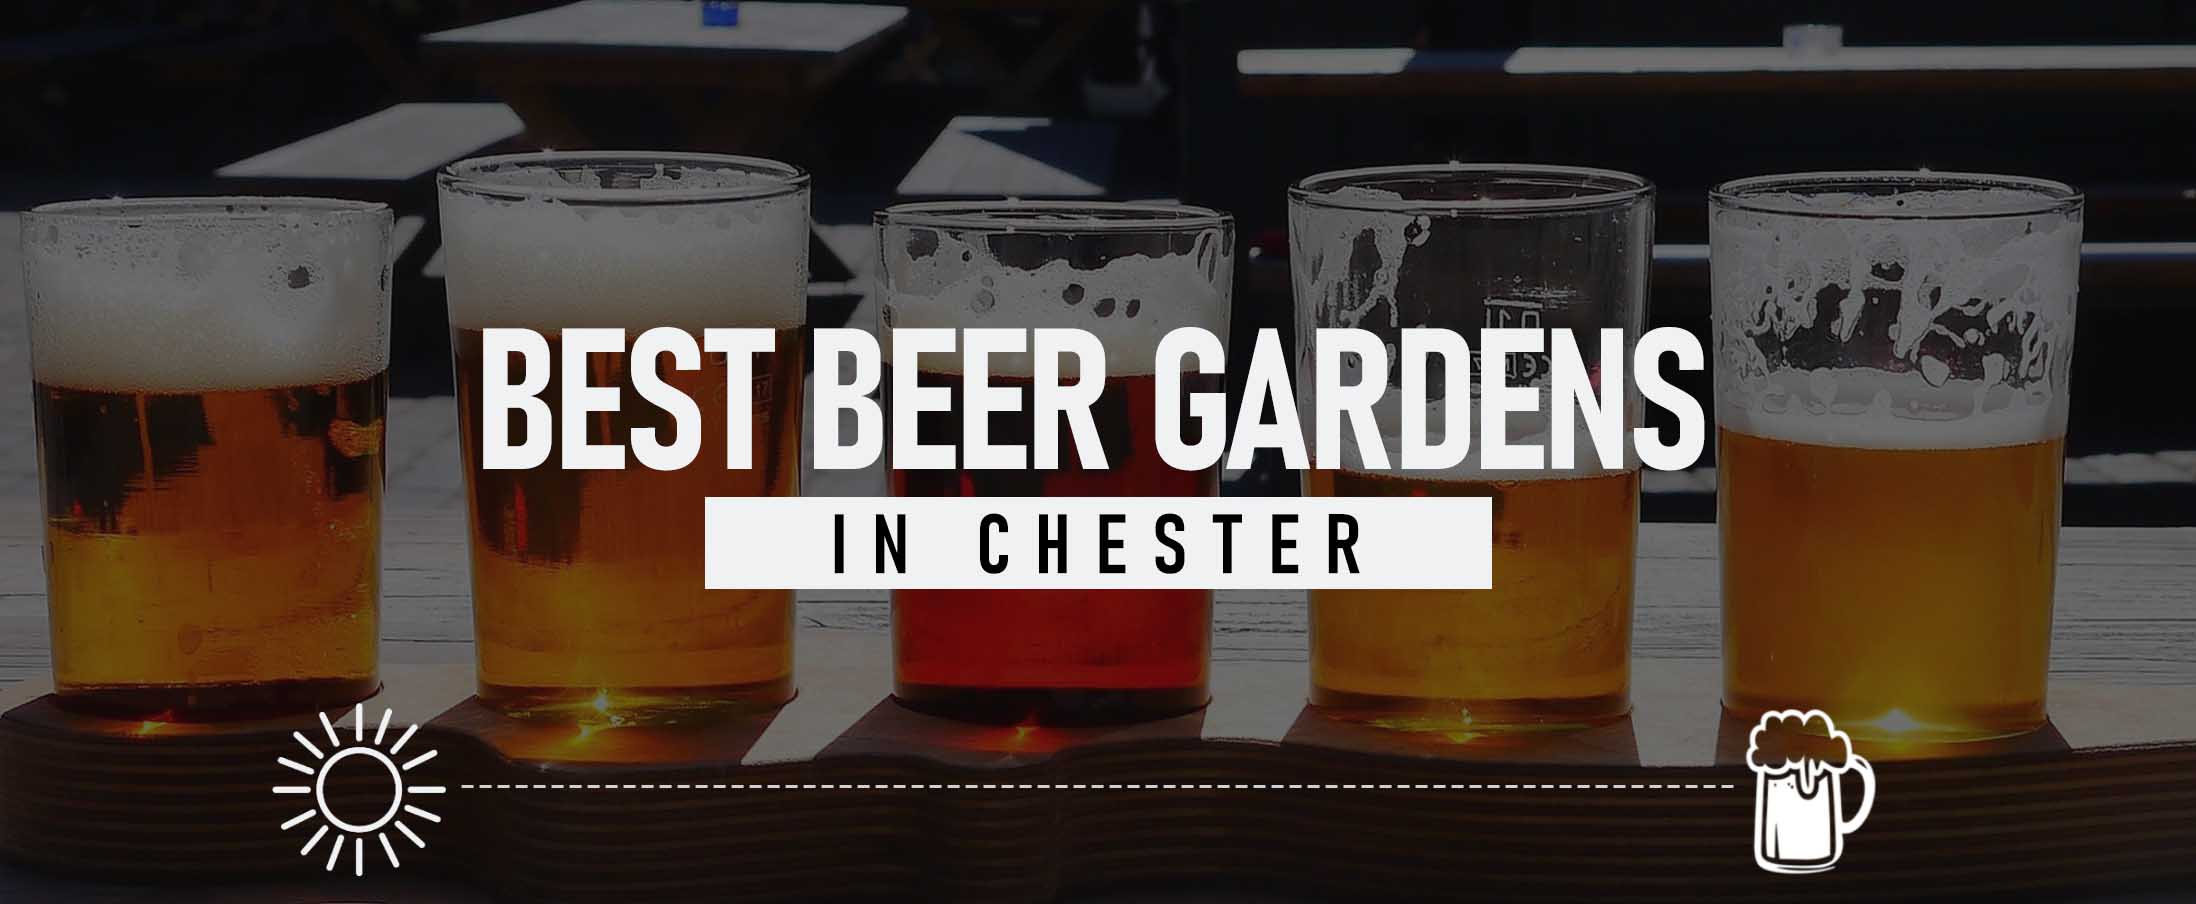 Best Beer Gardens in Chester